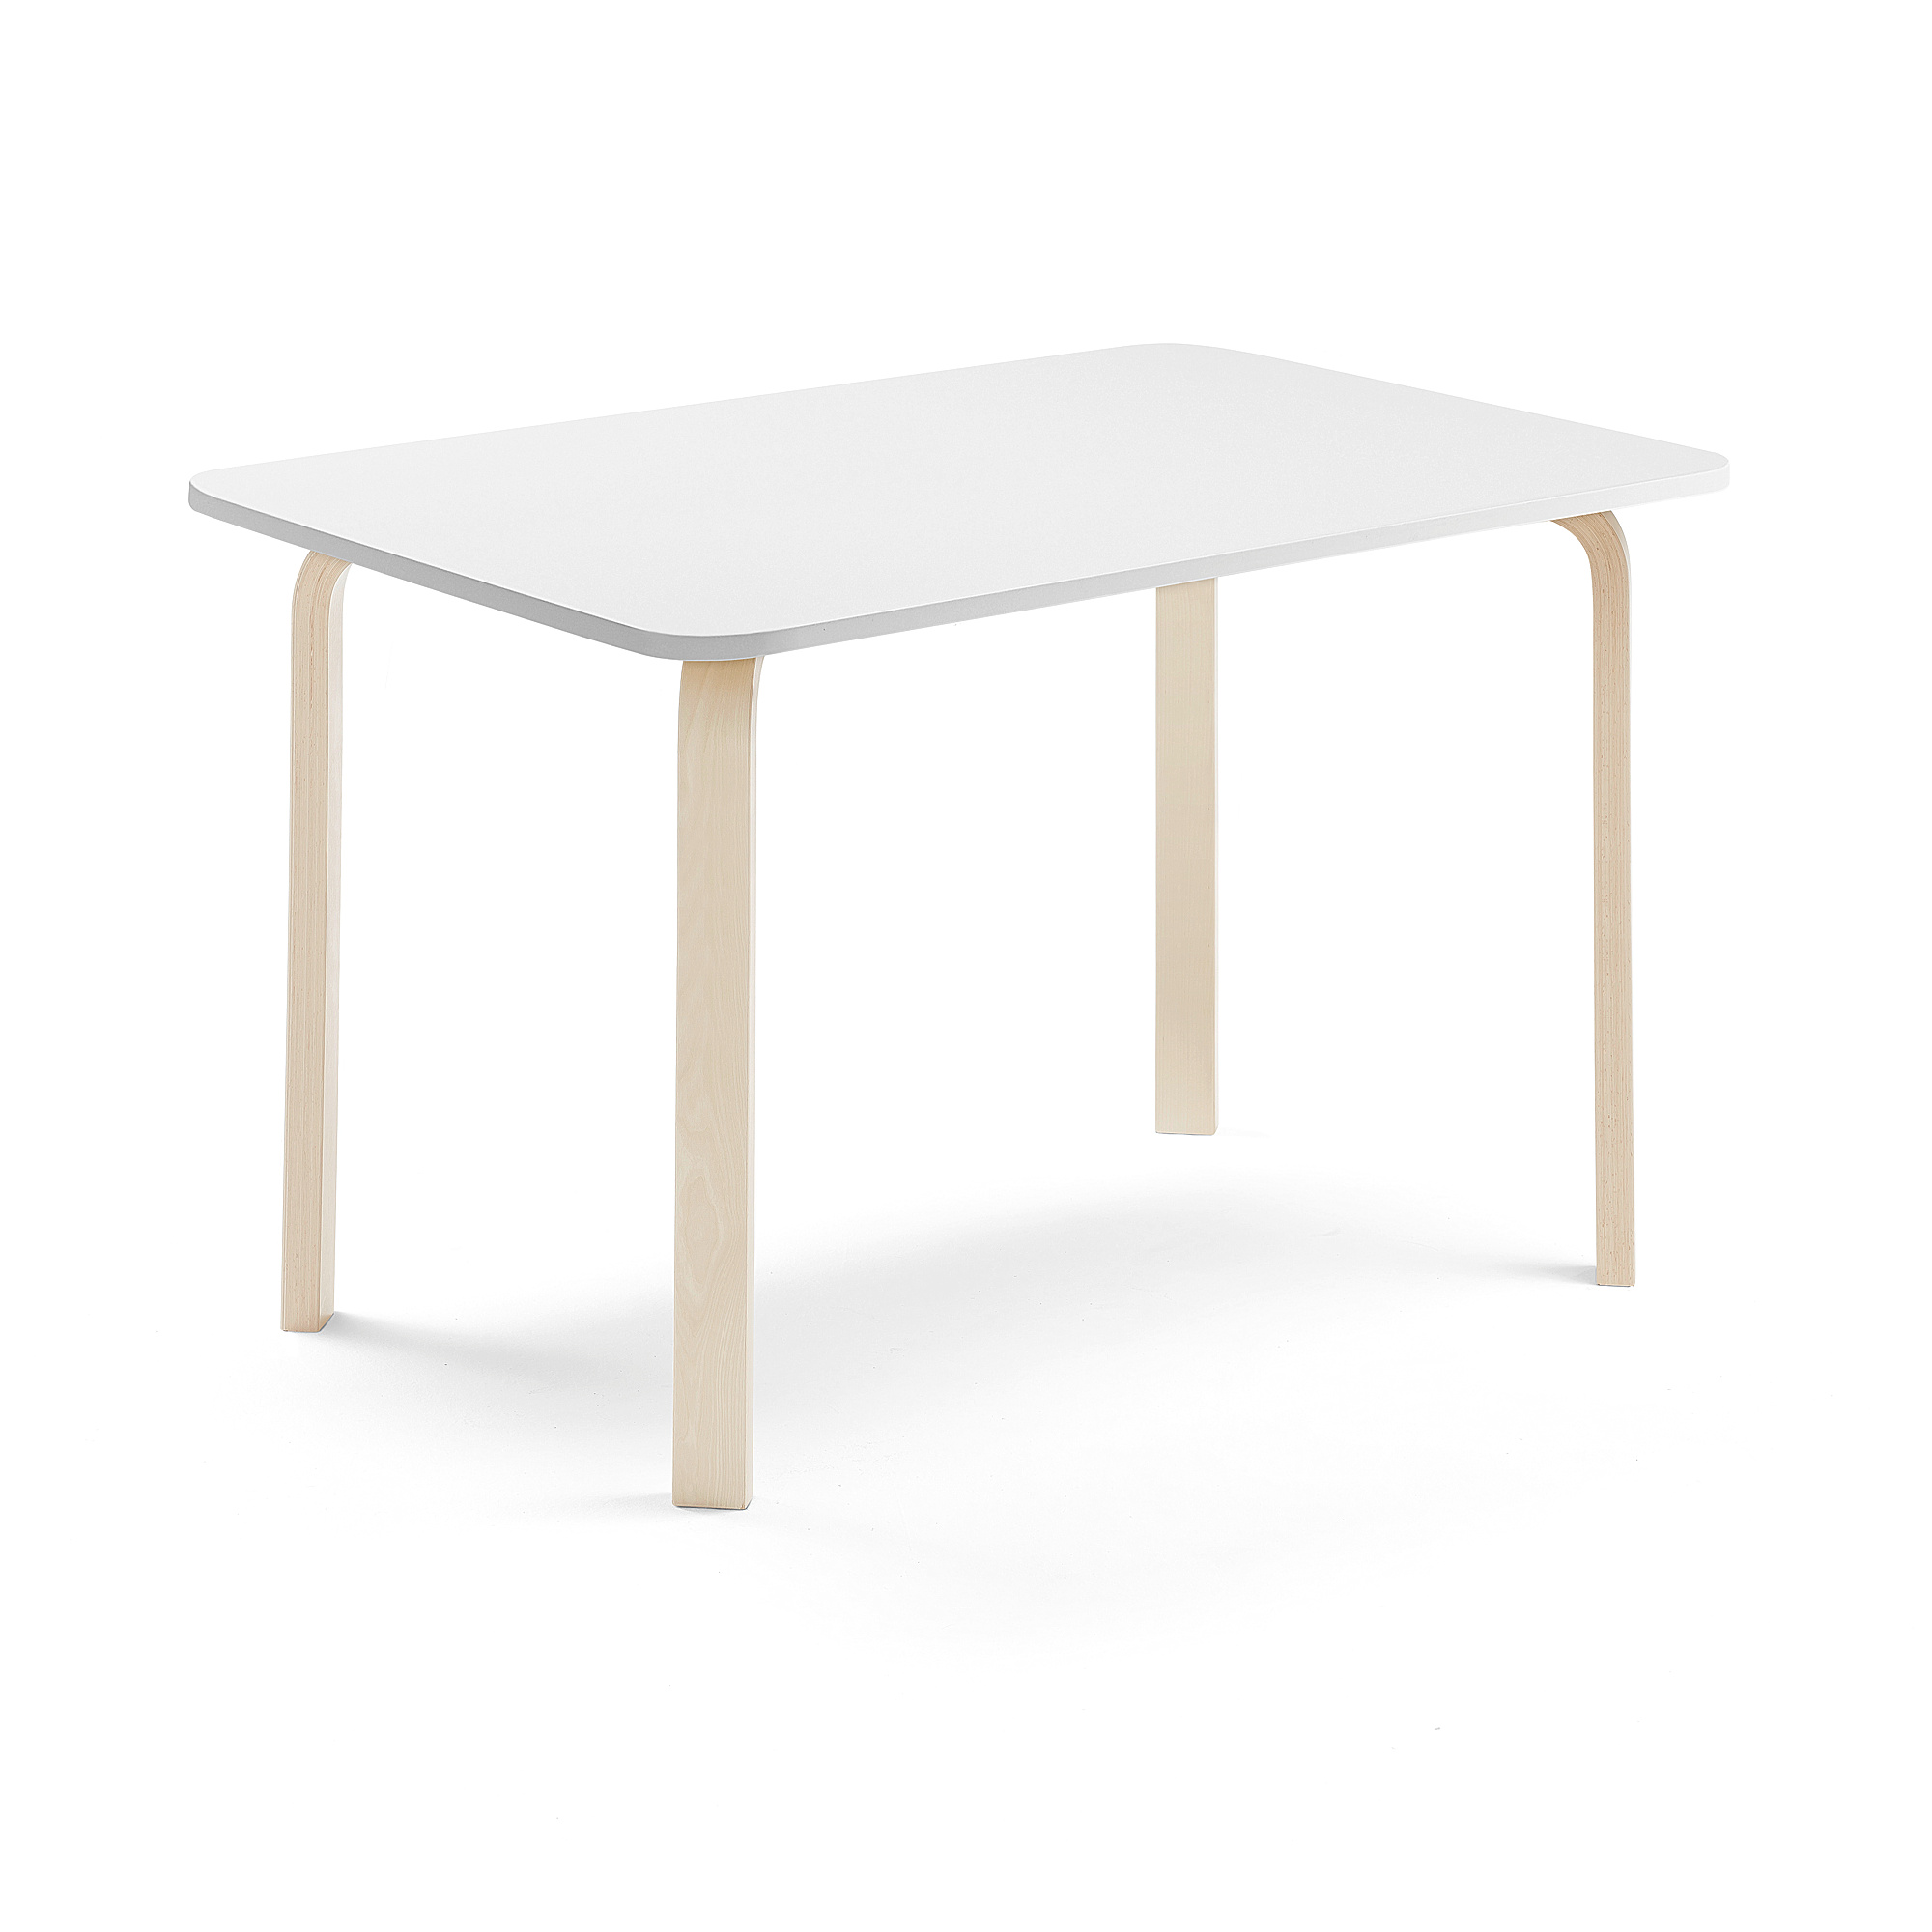 Stůl ELTON, 1200x700x710 mm, bříza, akustická HPL deska, bílá